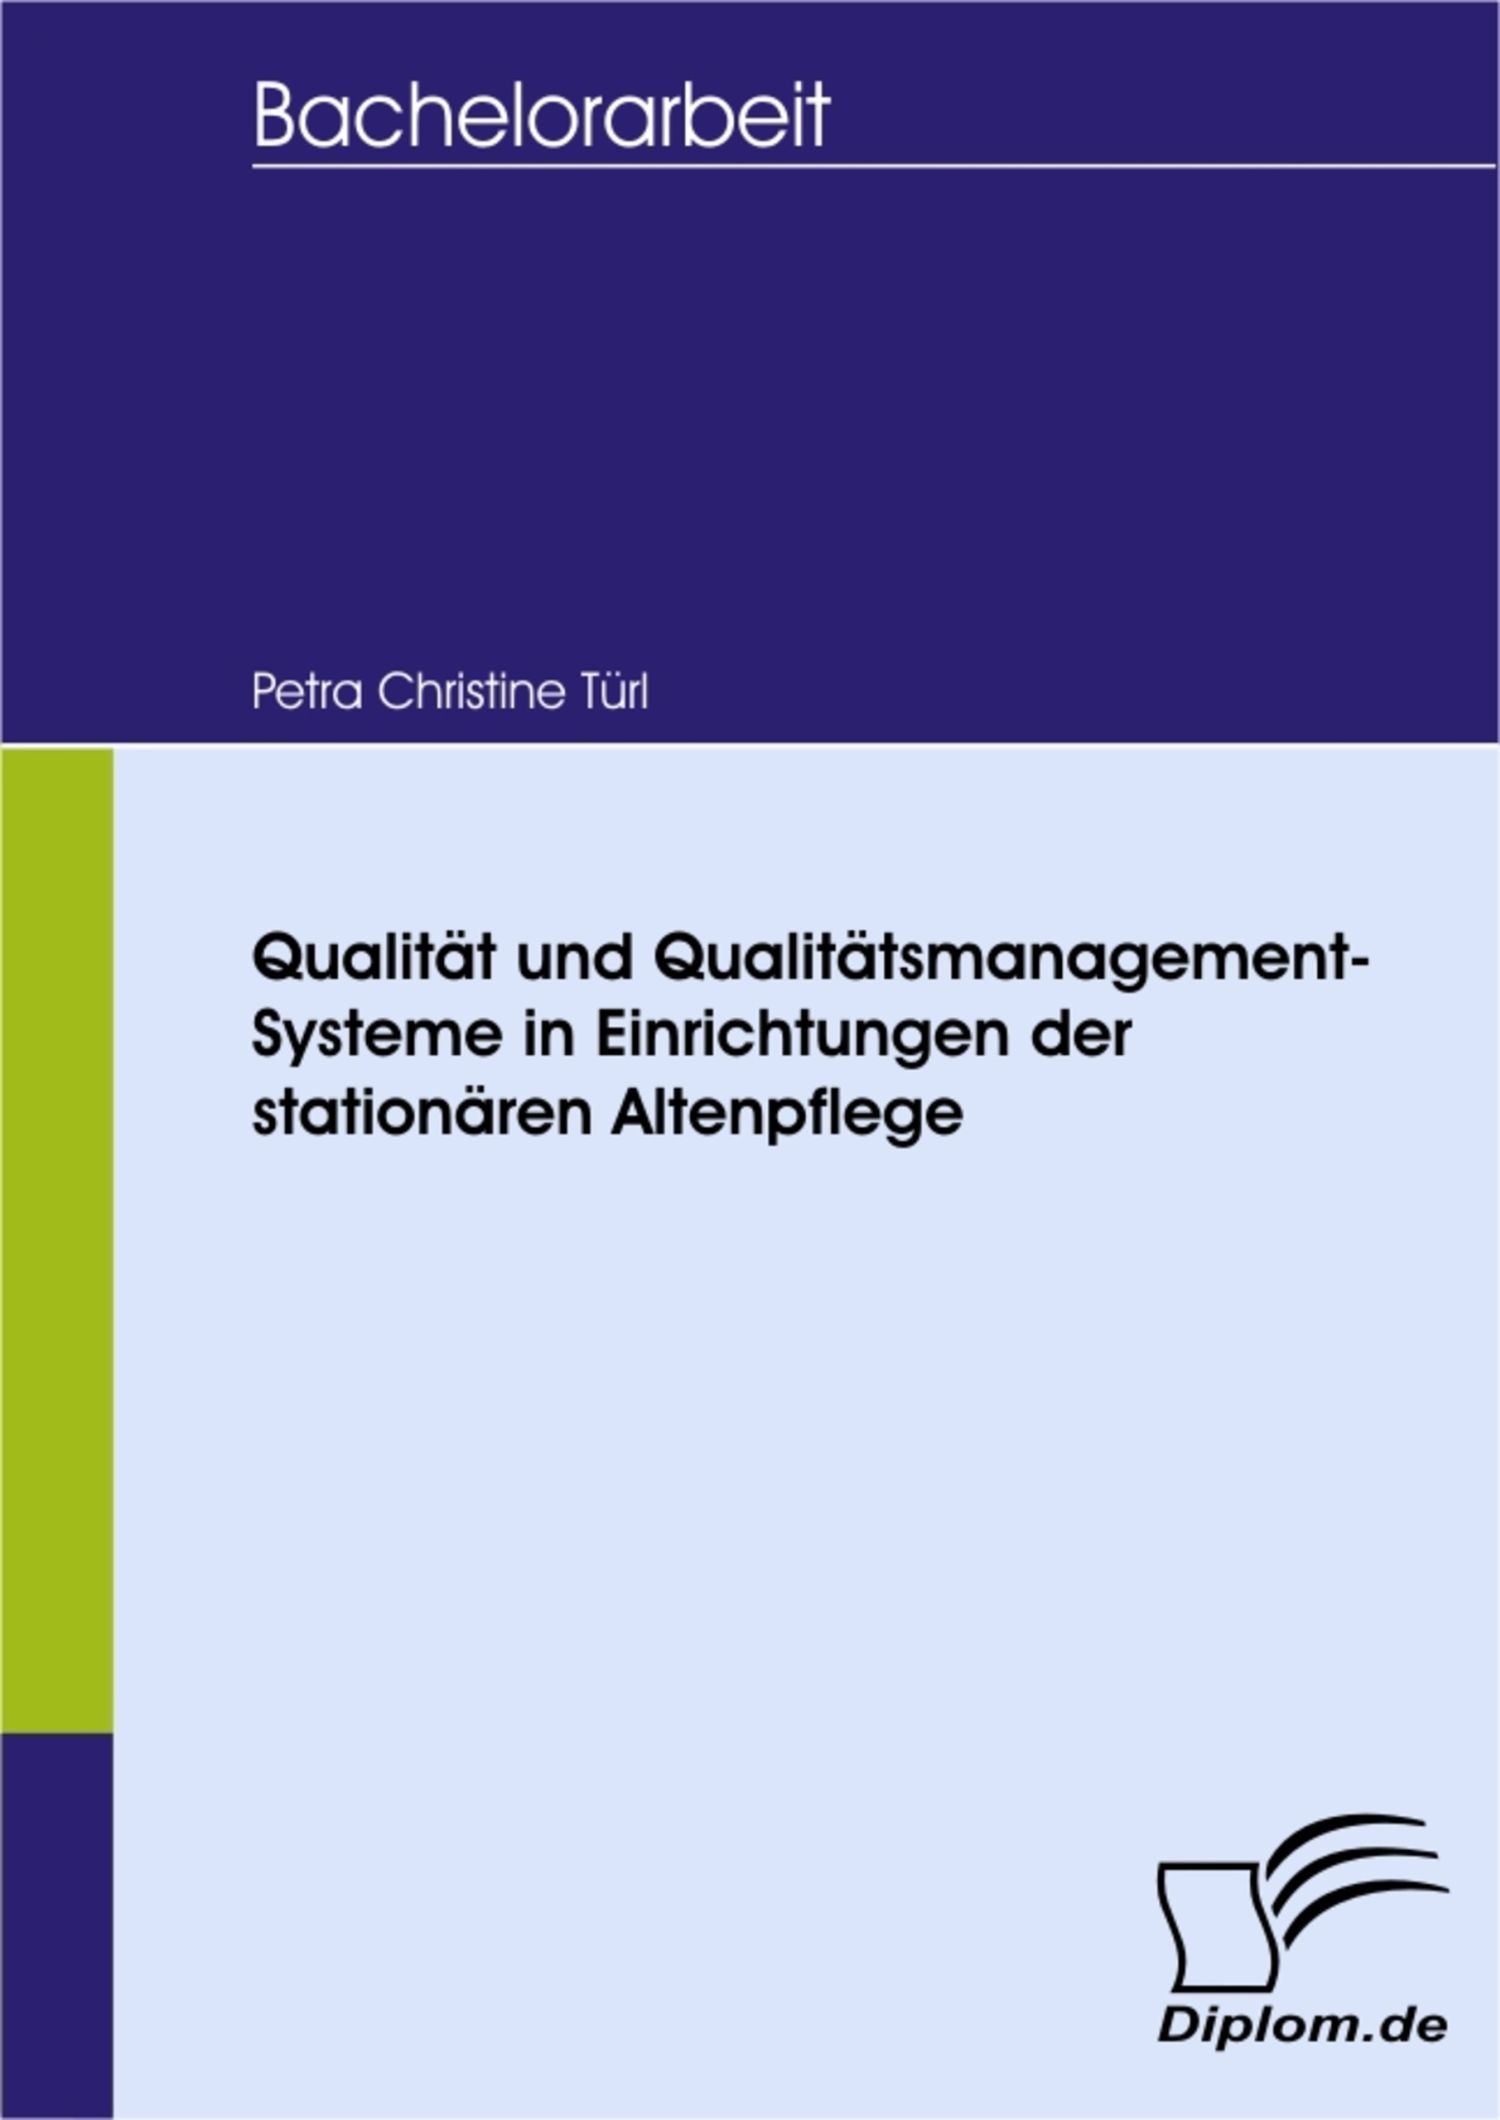 Qualität und Qualitätsmanagement-Systeme in Einrichtungen der stationären Altenpflege